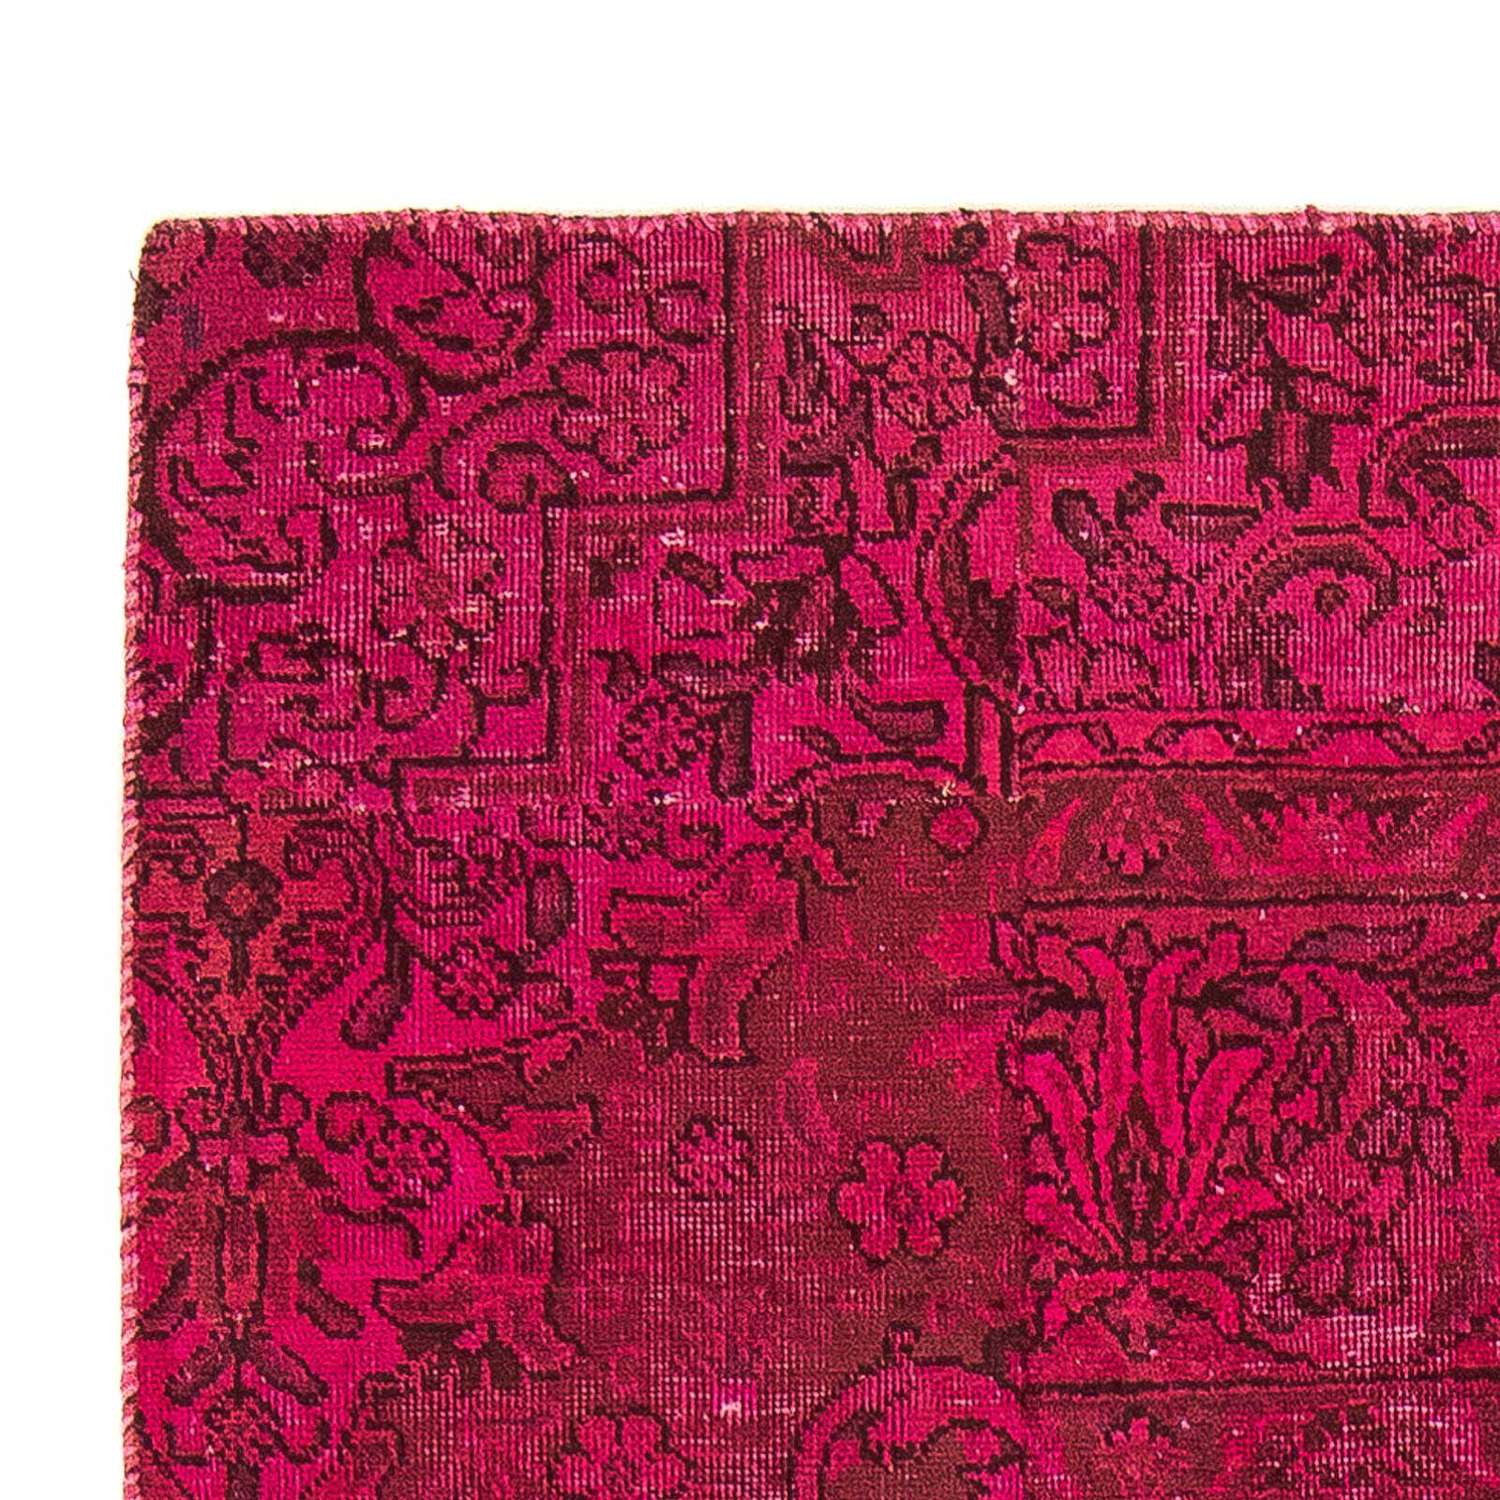 Tapis patchwork - 202 x 127 cm - multicolore